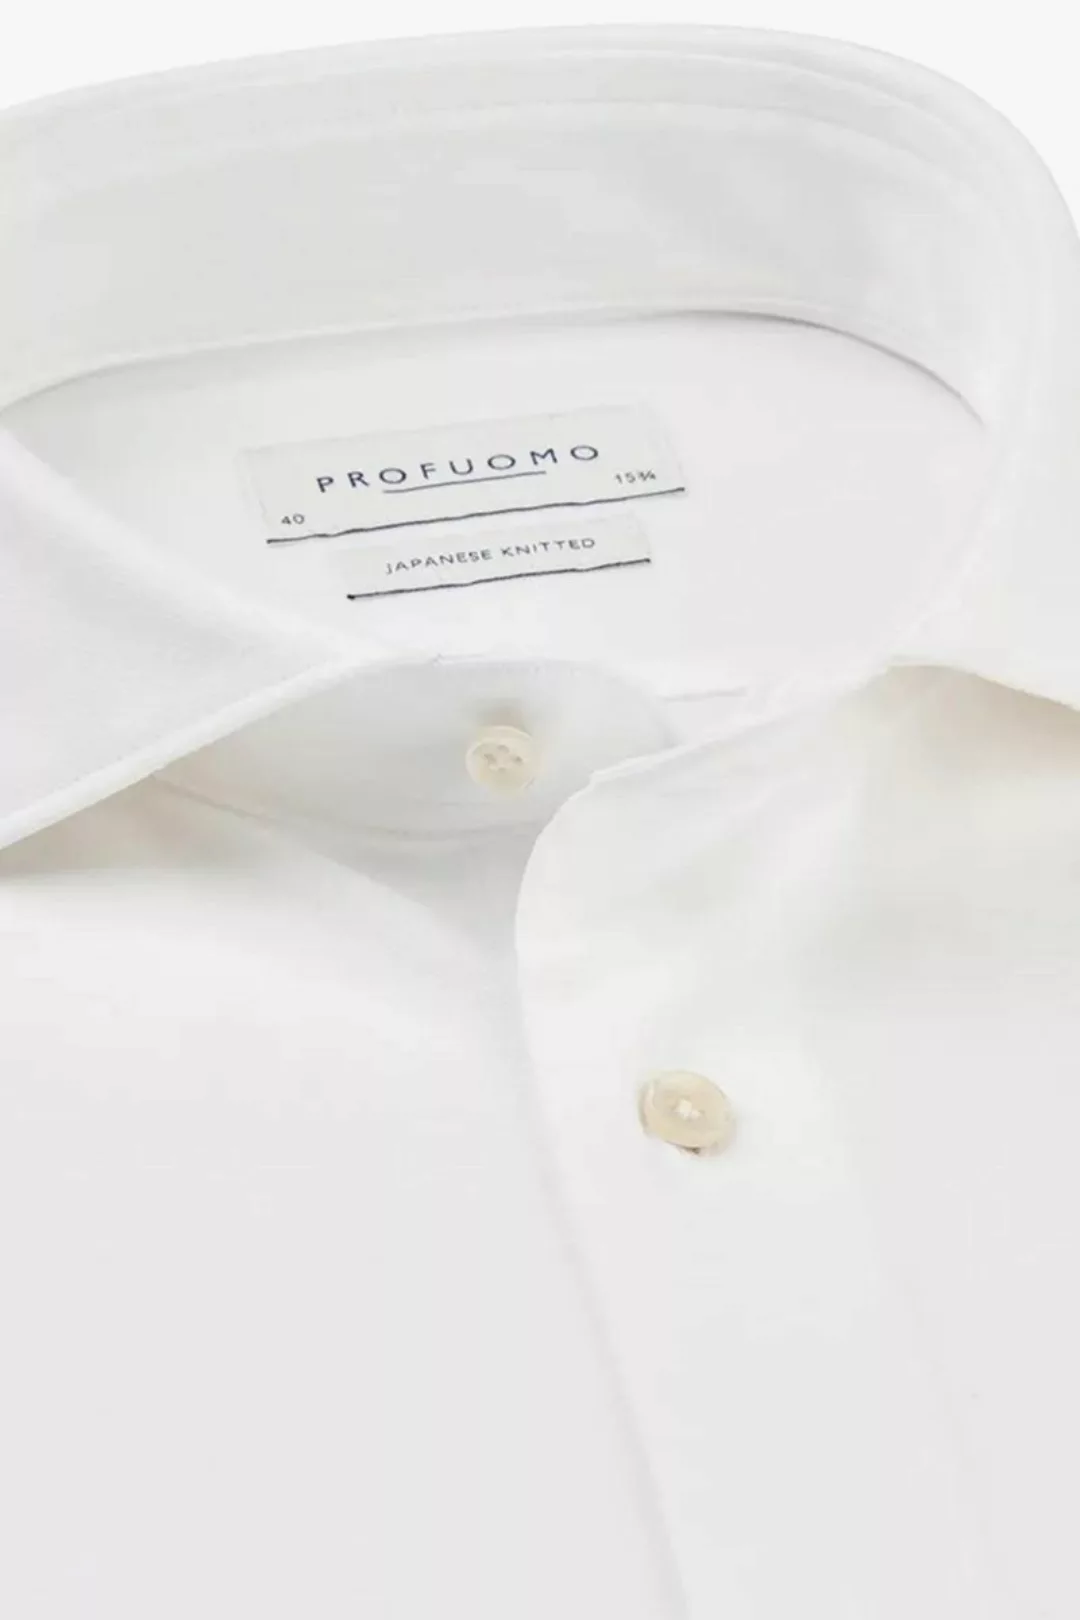 Profuomo Hemd Japanese Knitted Weiß - Größe 44 günstig online kaufen